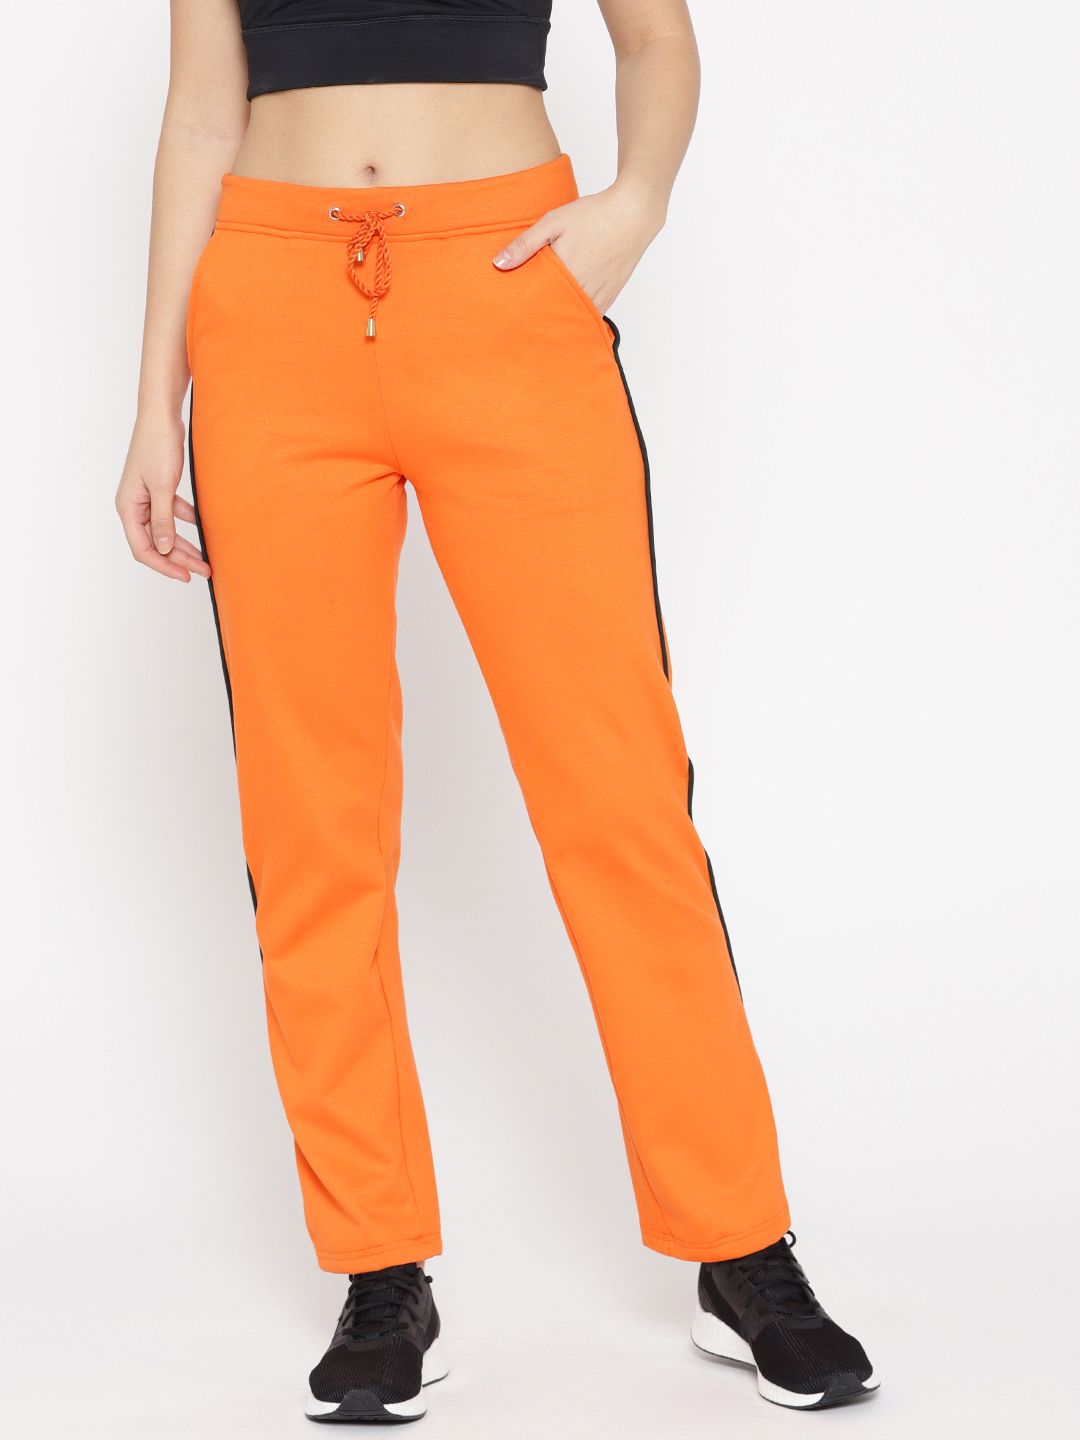 Alsace Lorraine Paris Women Orange Solid Track Pants Price in India